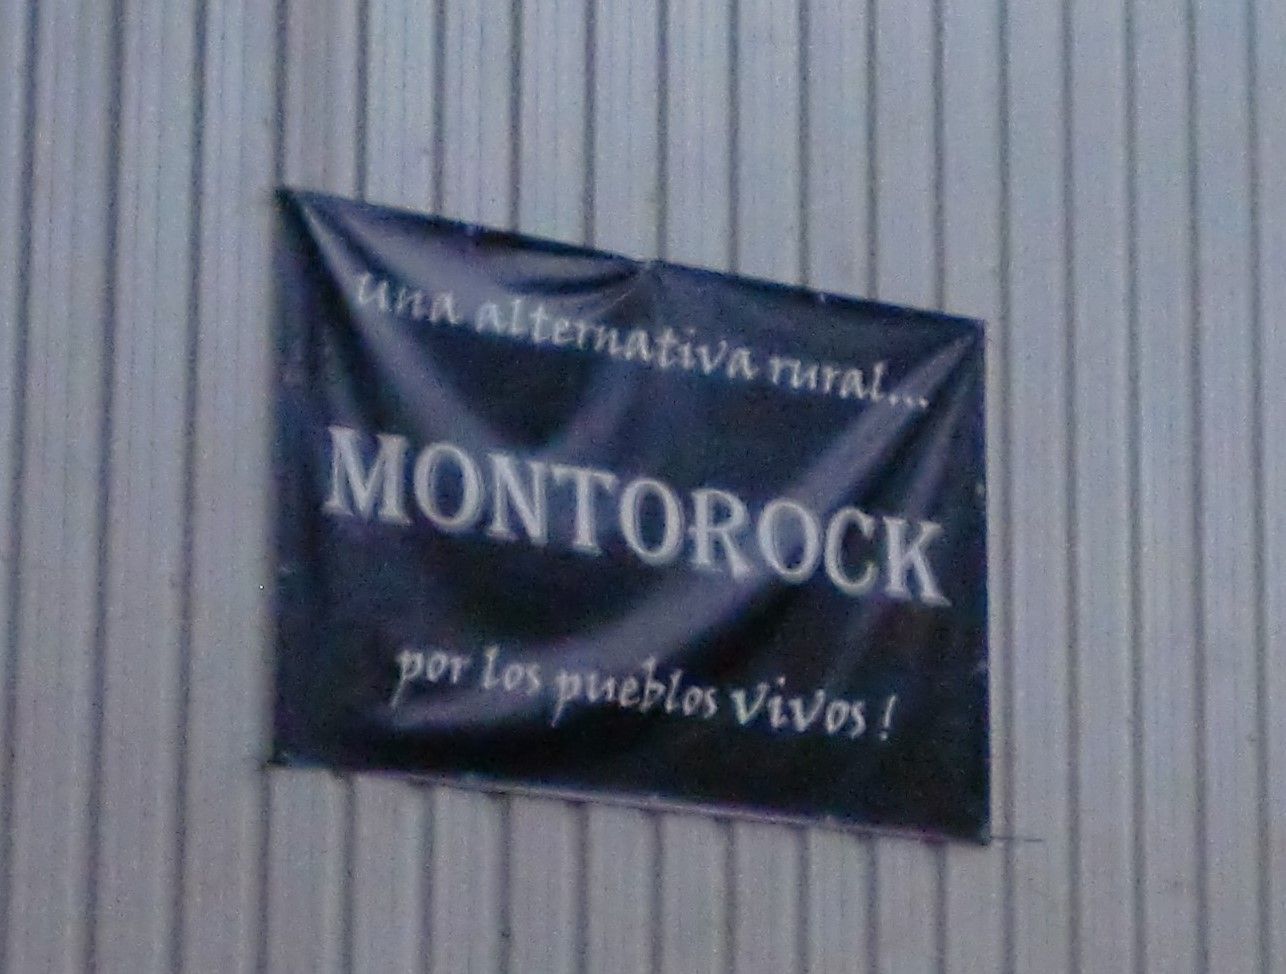 Festival anual de música Rock - MontoRock